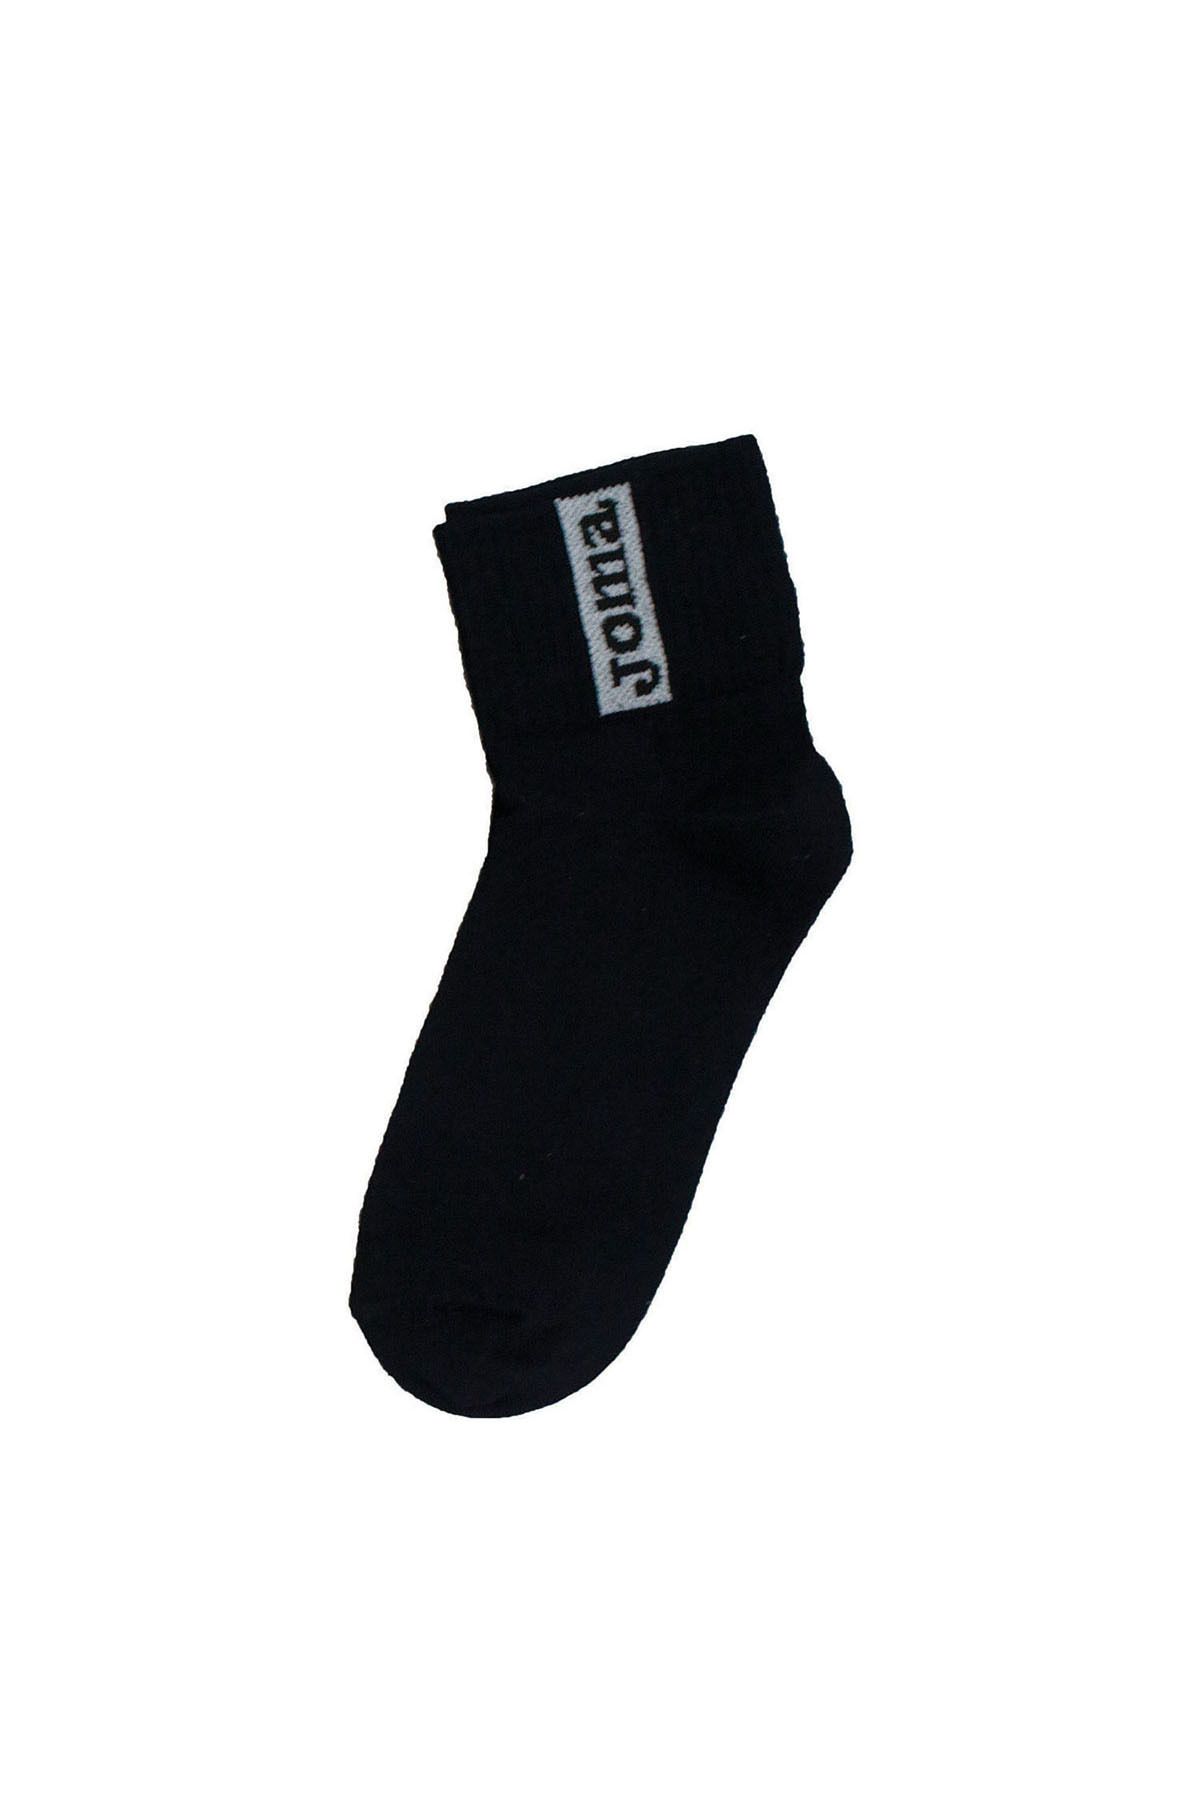 Joma Futbol Maç Kısa Çorap Modelli 9212075